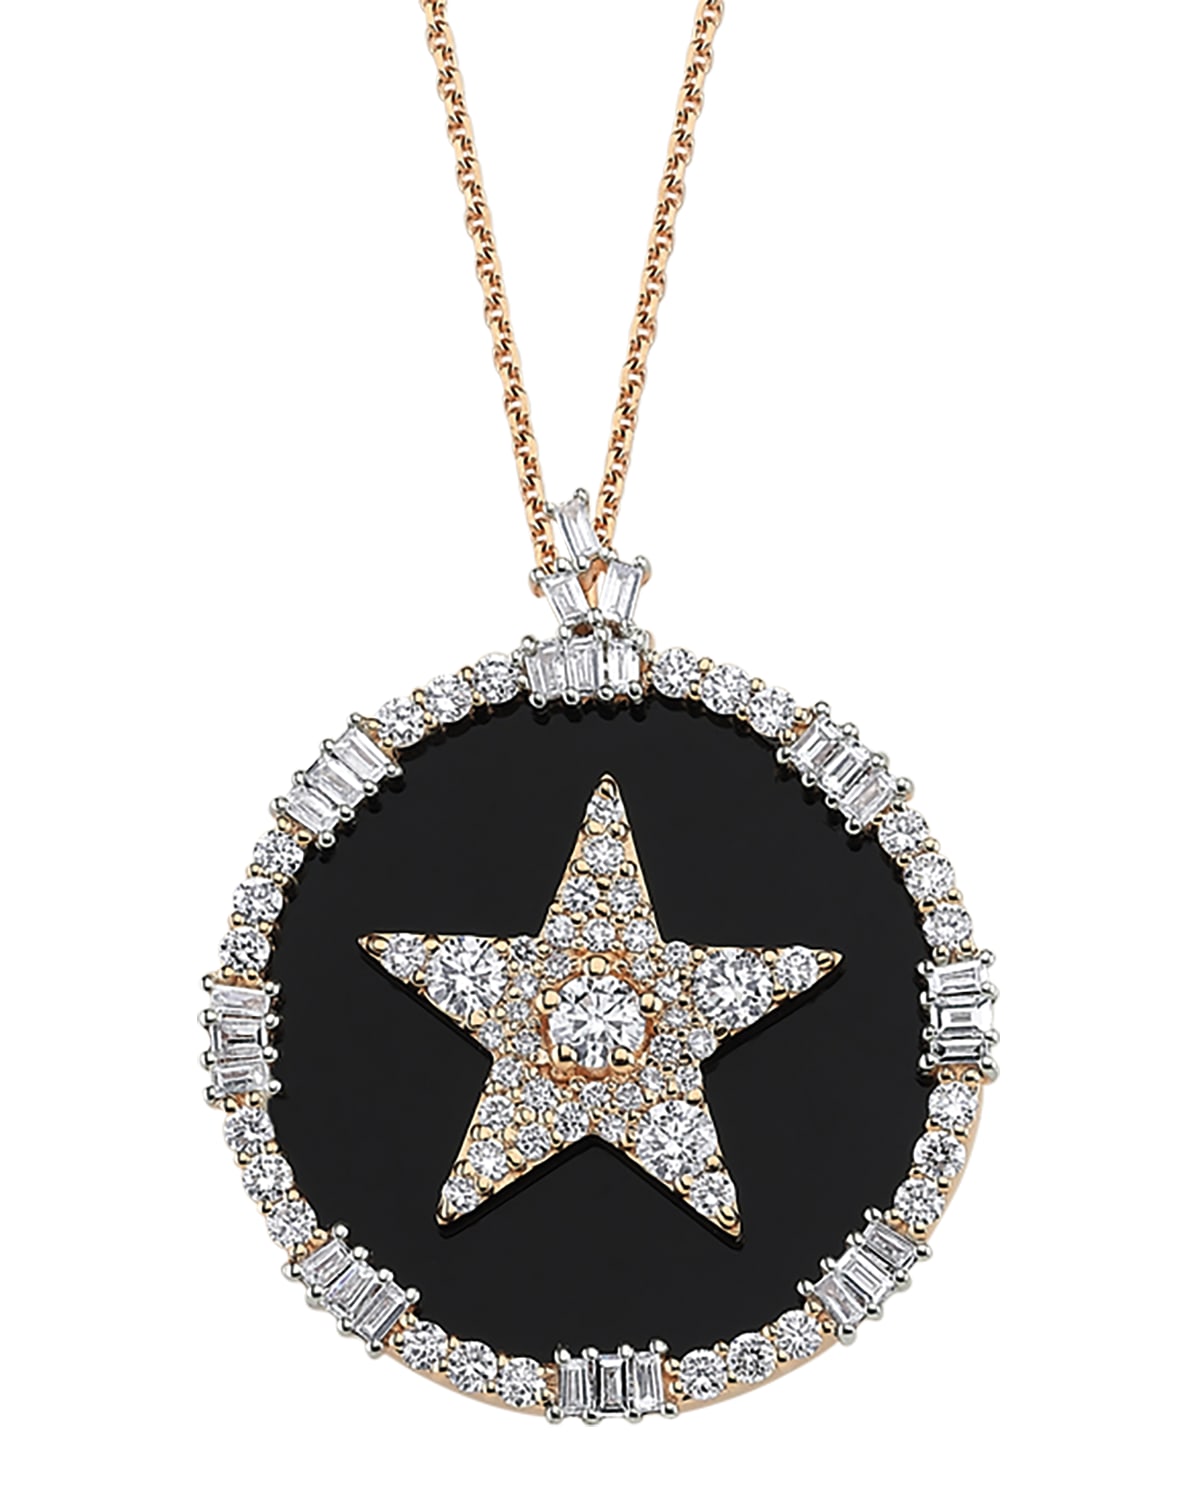 BeeGoddess Sirius Stat 14k Diamond Pave Necklace